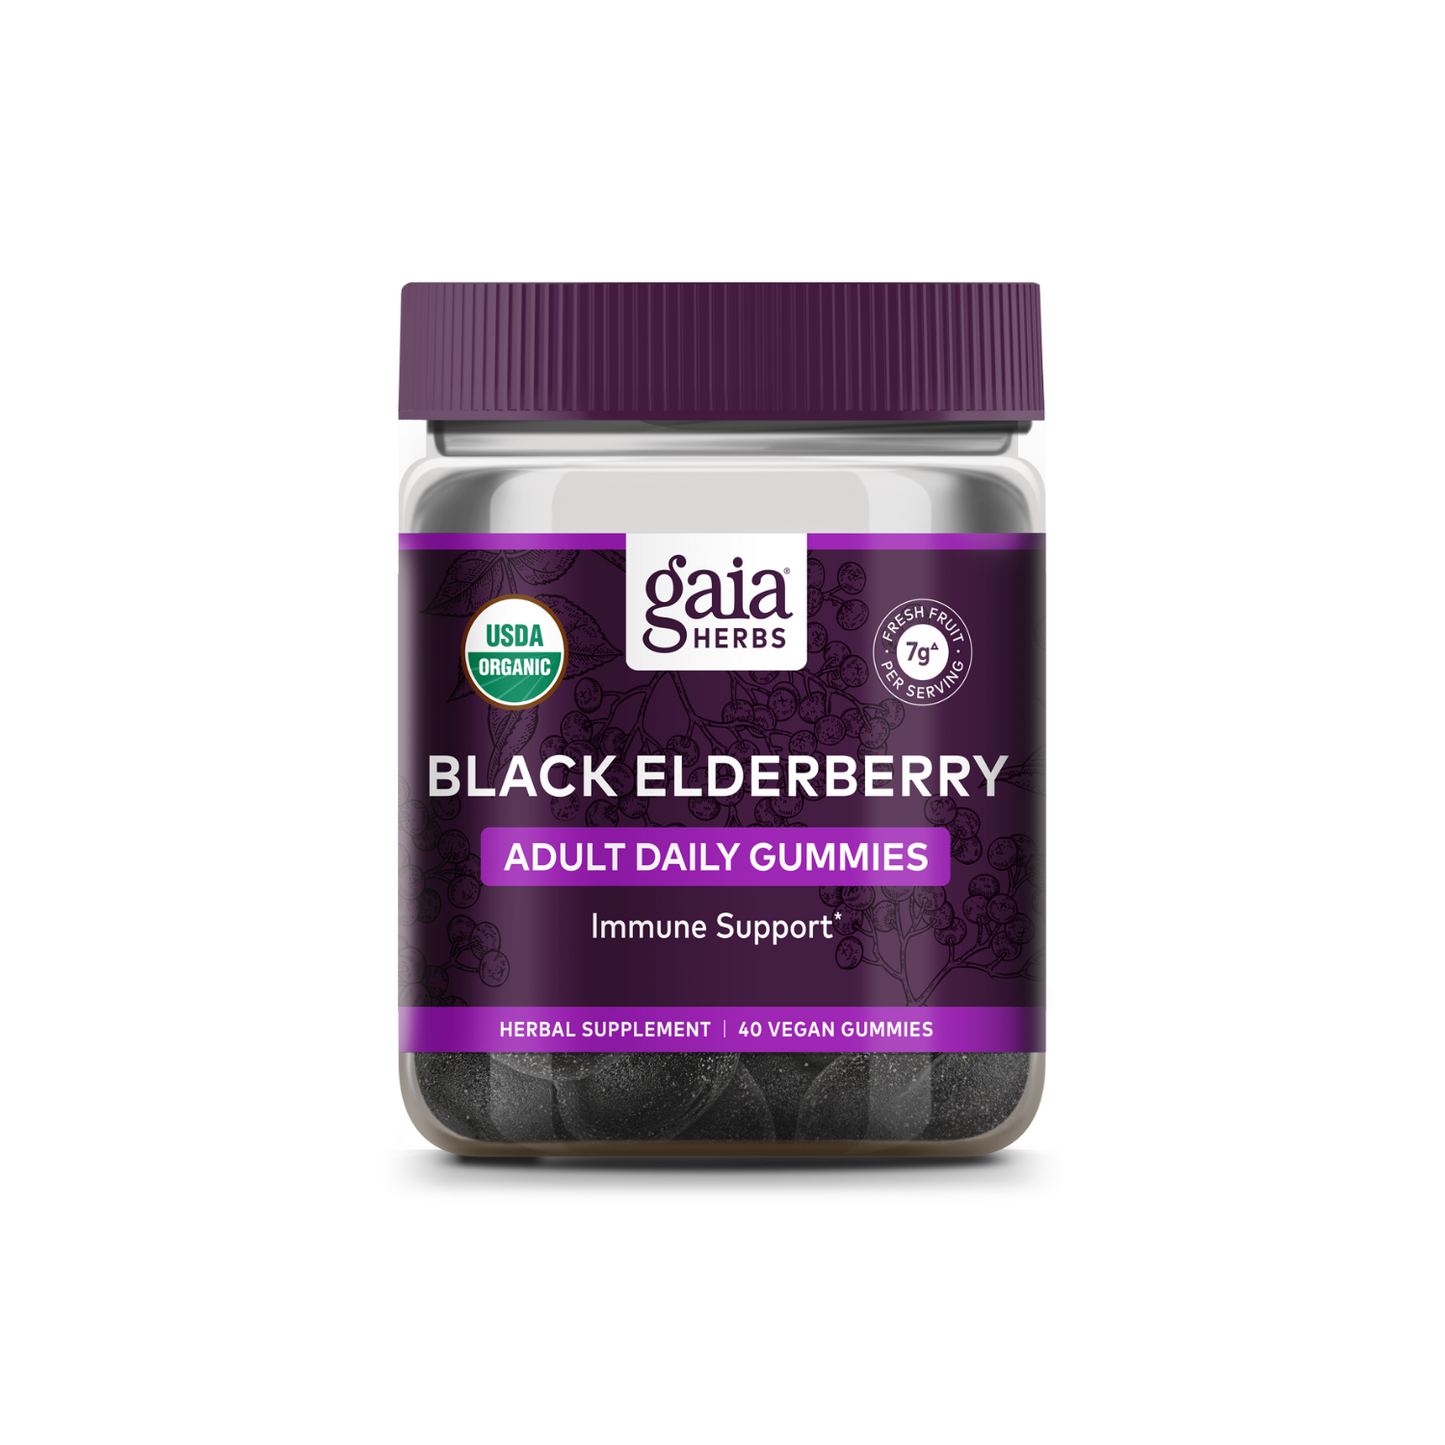 Gaia Herbs Black Elderberry Adult Daily Gummies, 40 Vegan Gummies.